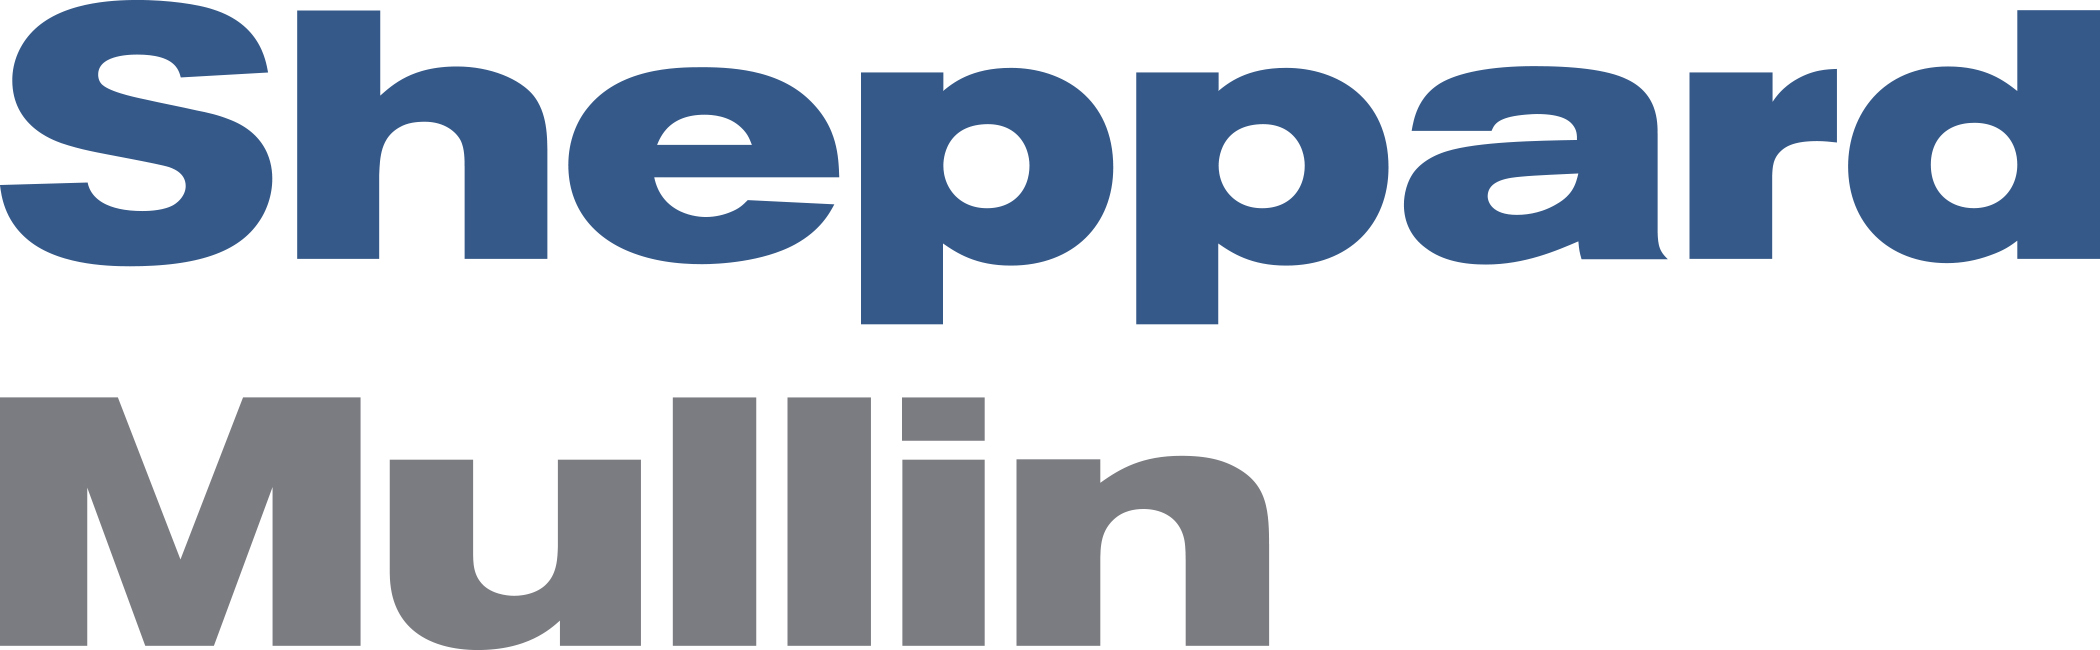 sheppard mullen logo.png